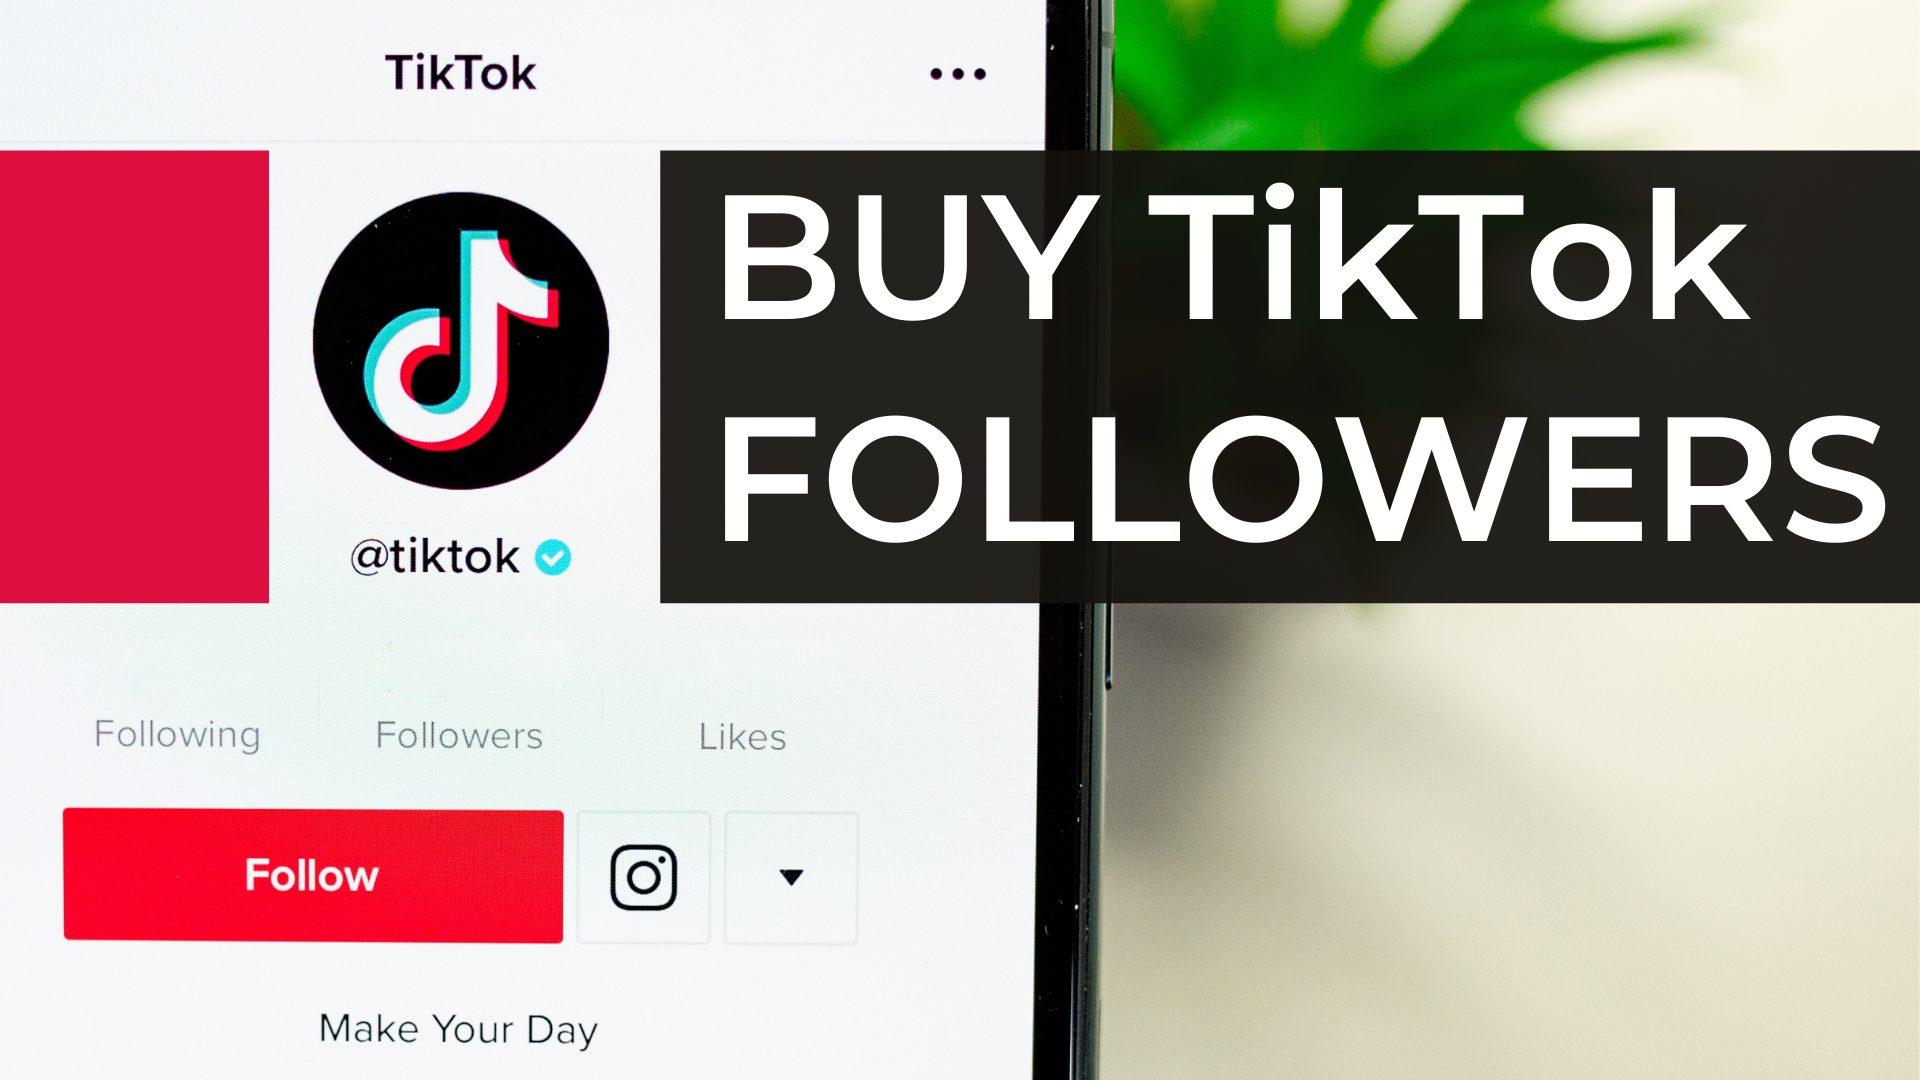 10 Best Sites to Buy TikTok Followers, Views & Likes (2021)